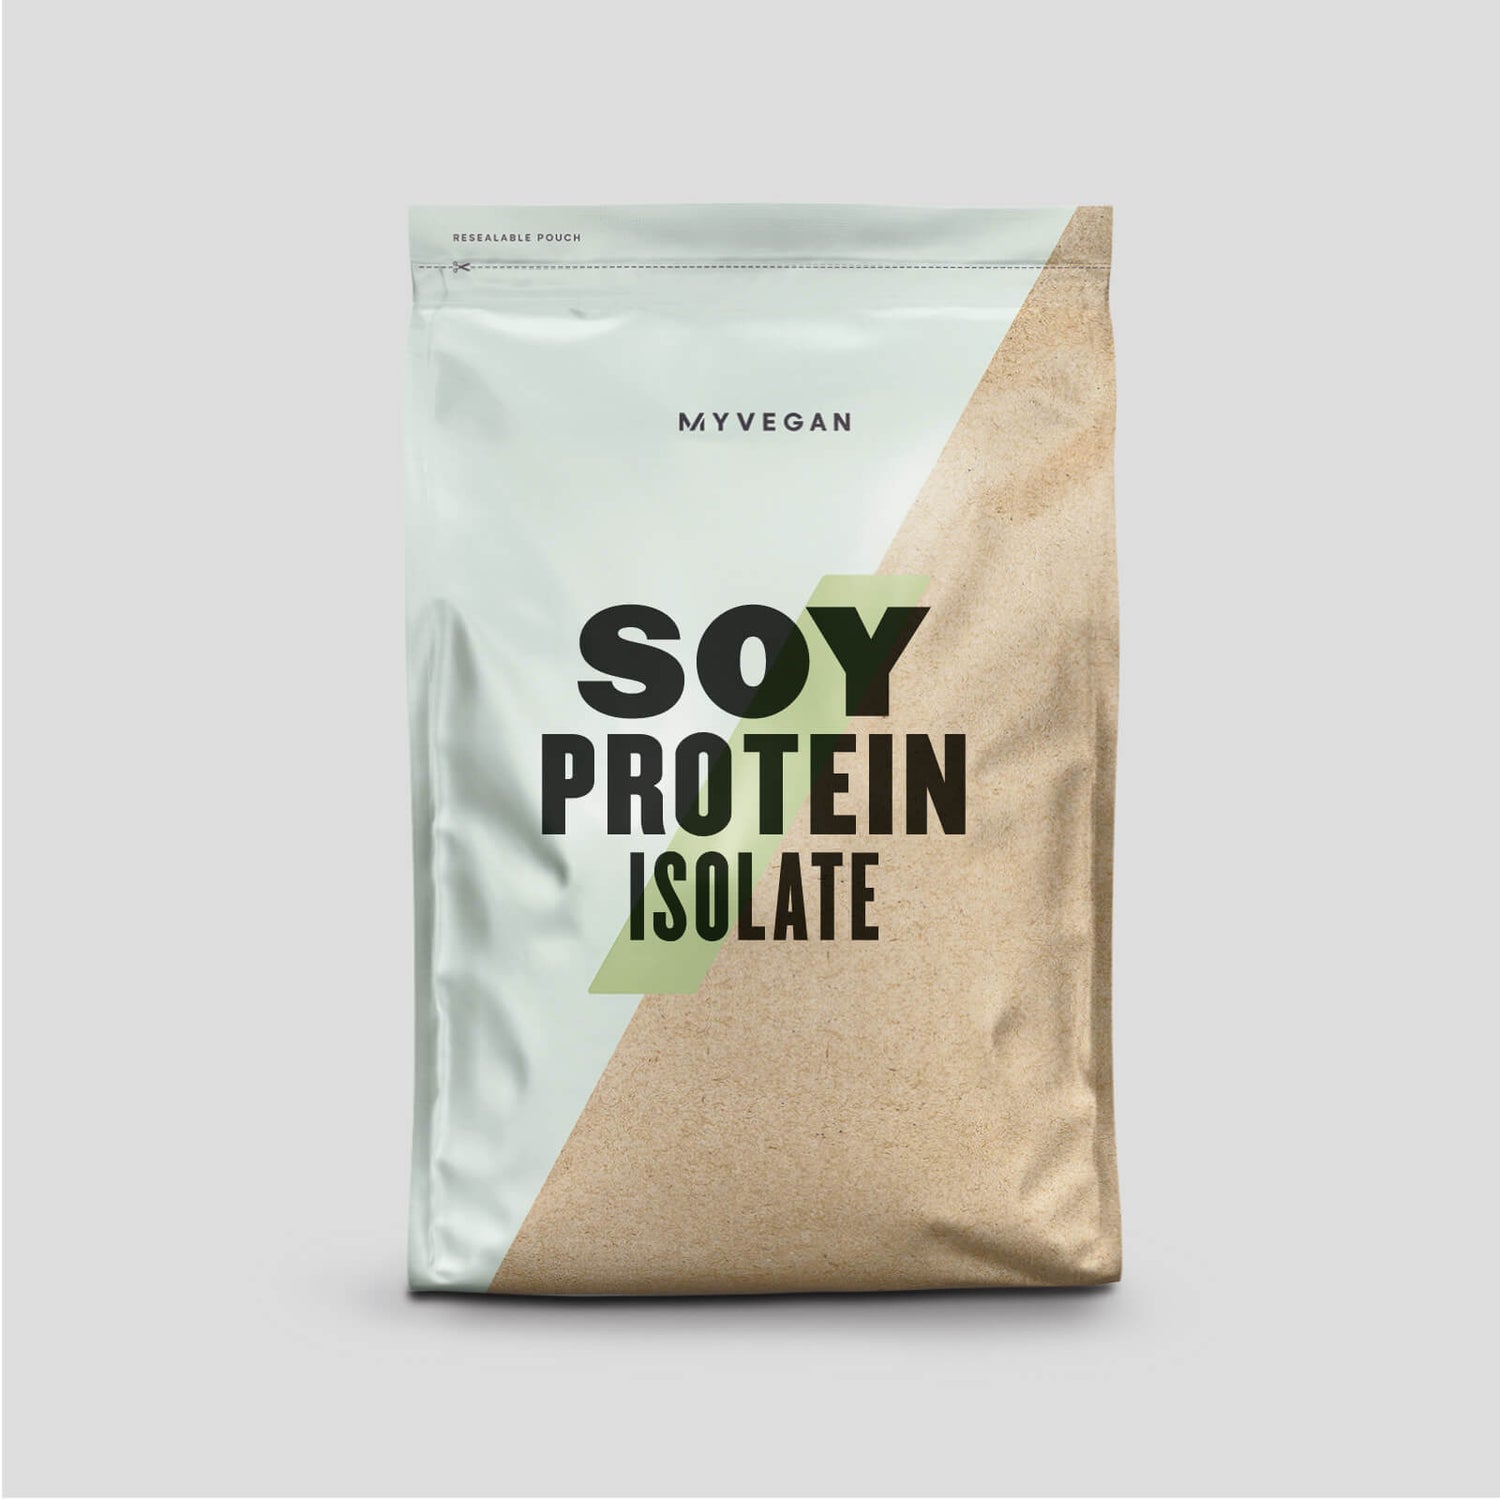 Aislado de Proteína de Soja - 500g - Caramelo Salado